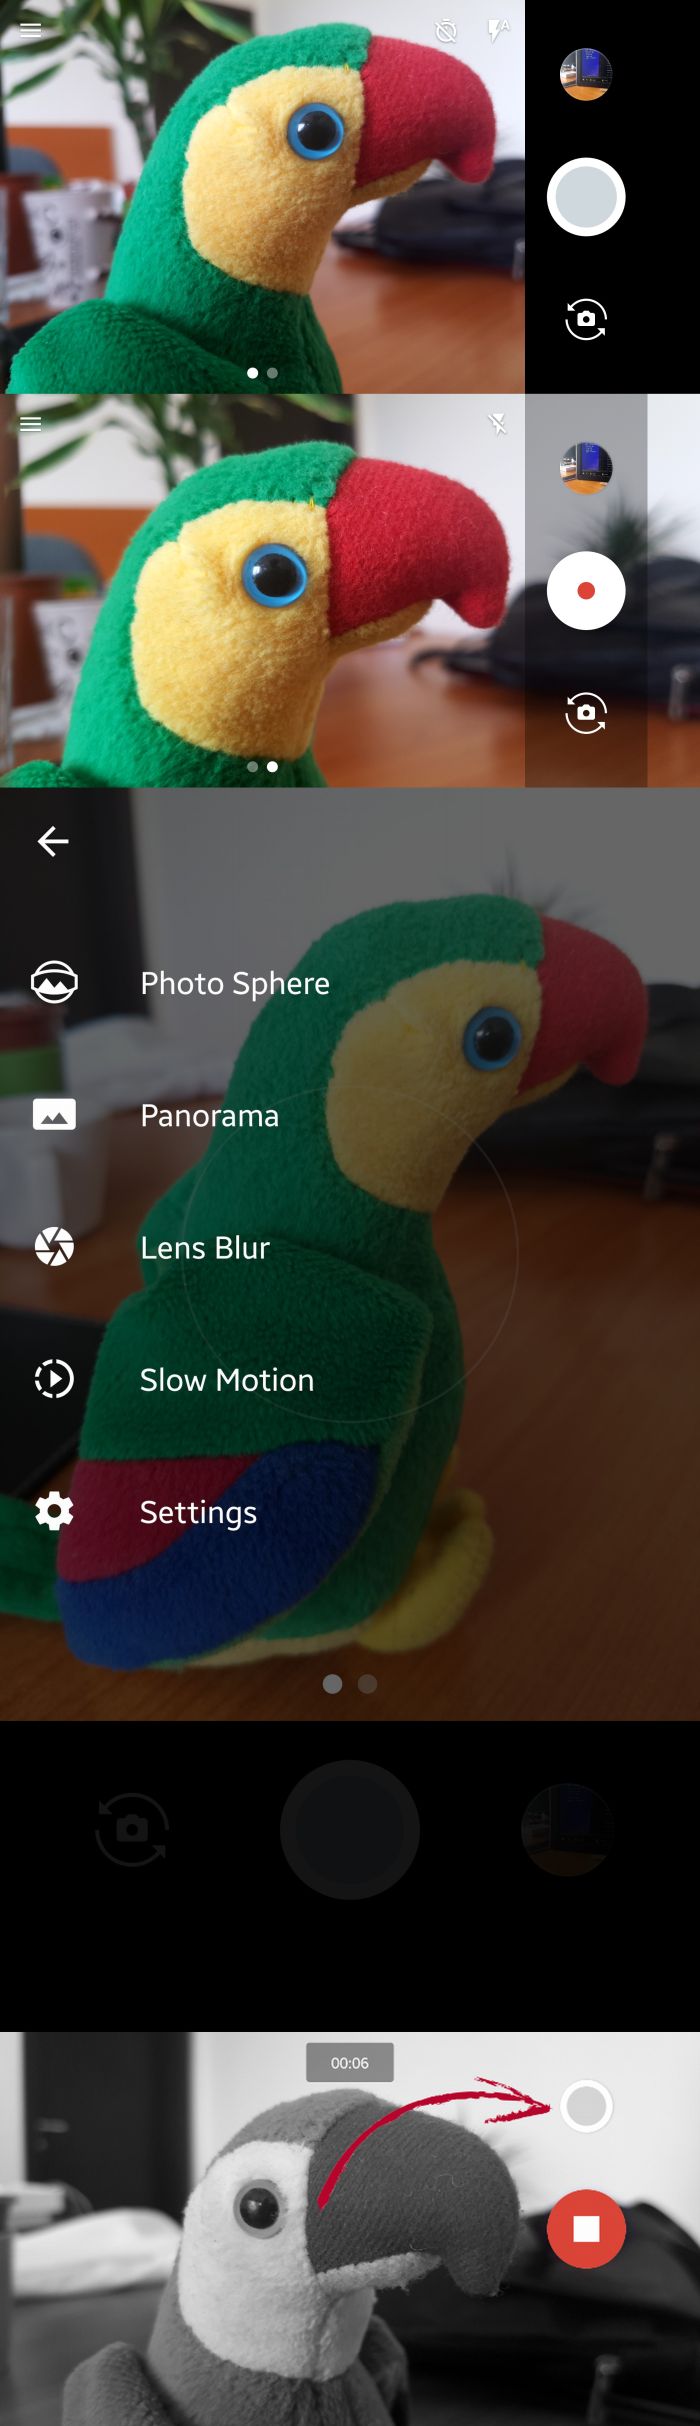 Régi-új funkció érkezett vissza a Google Camera appba